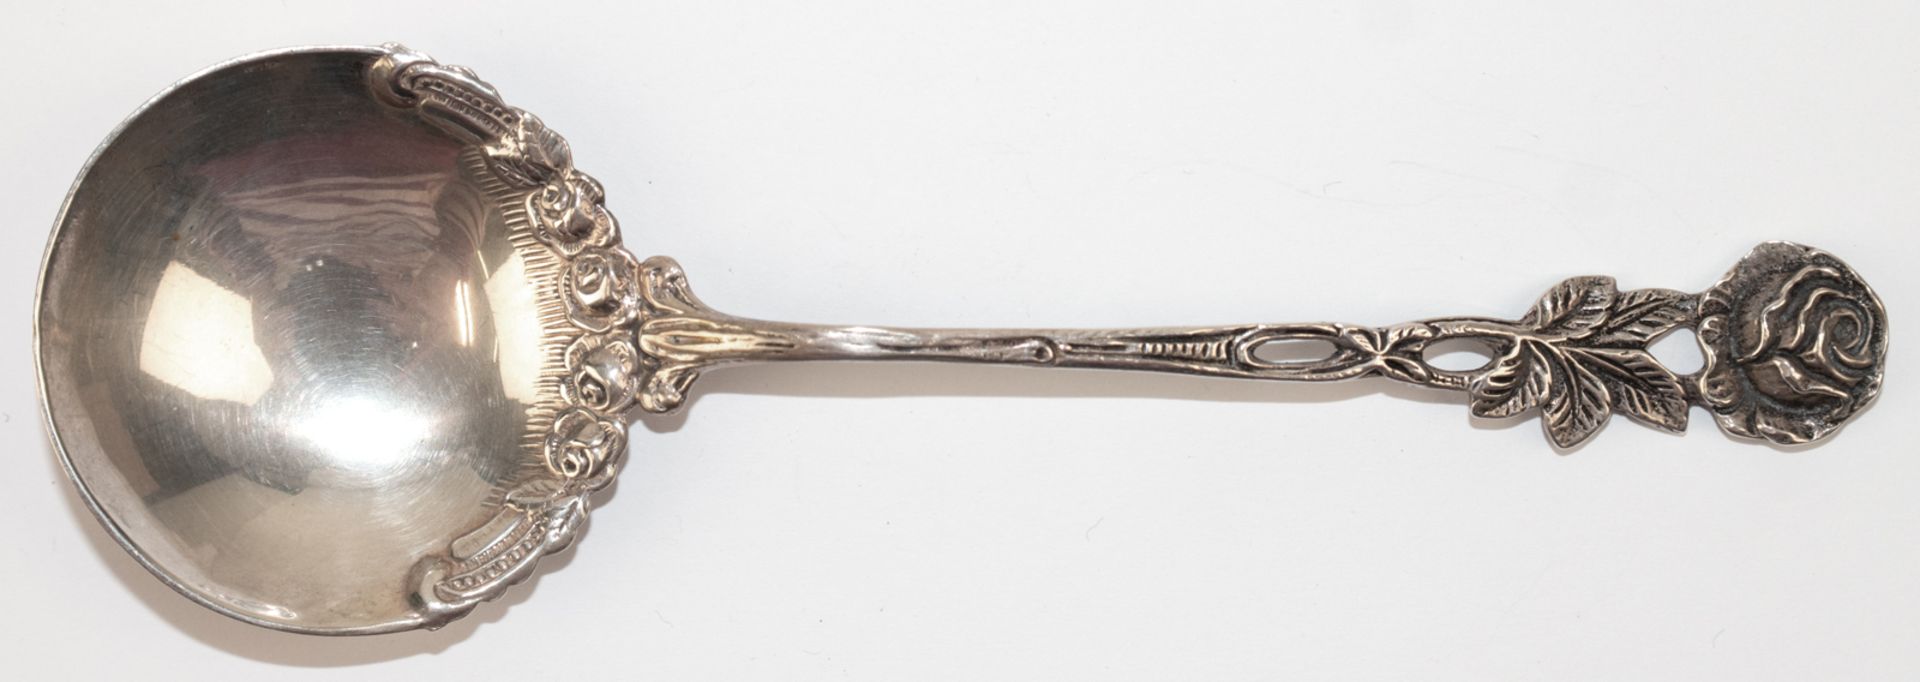 Sahnelöffel mit Rosendekor,WMF, 800er Silber, 23 g, L. 15,5 cm